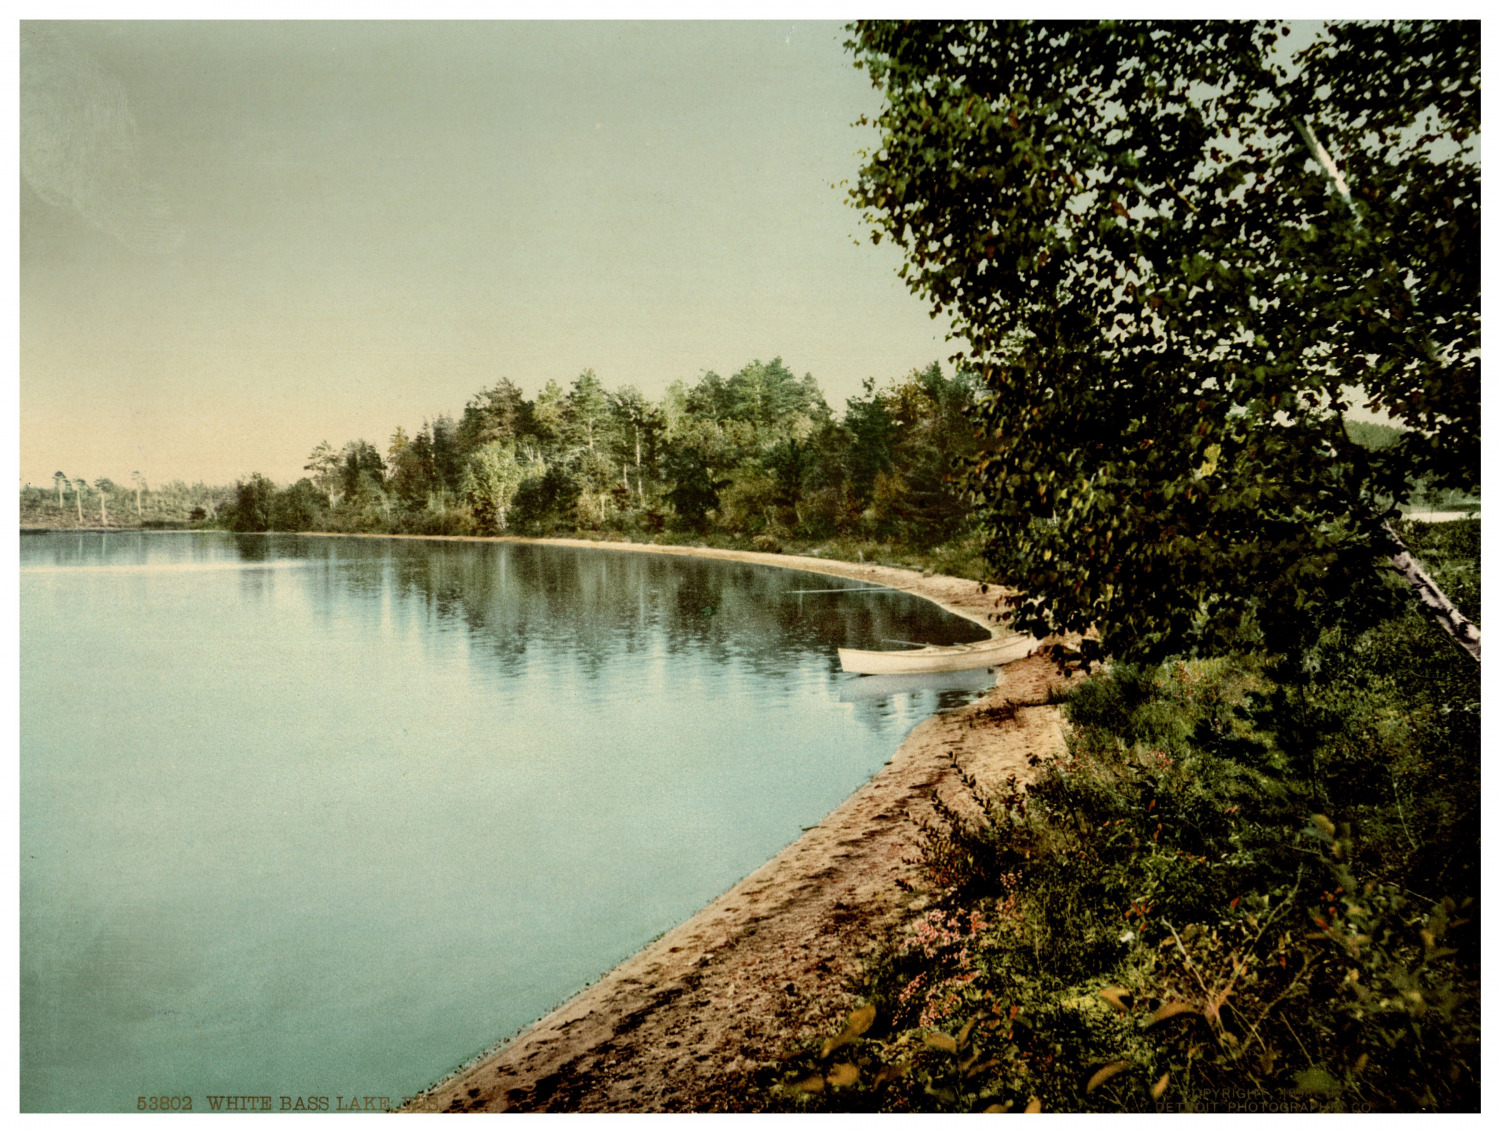 Wisconsin, White Bas Lake Vintage Photochrome, Photochromy, Vintage Photochr